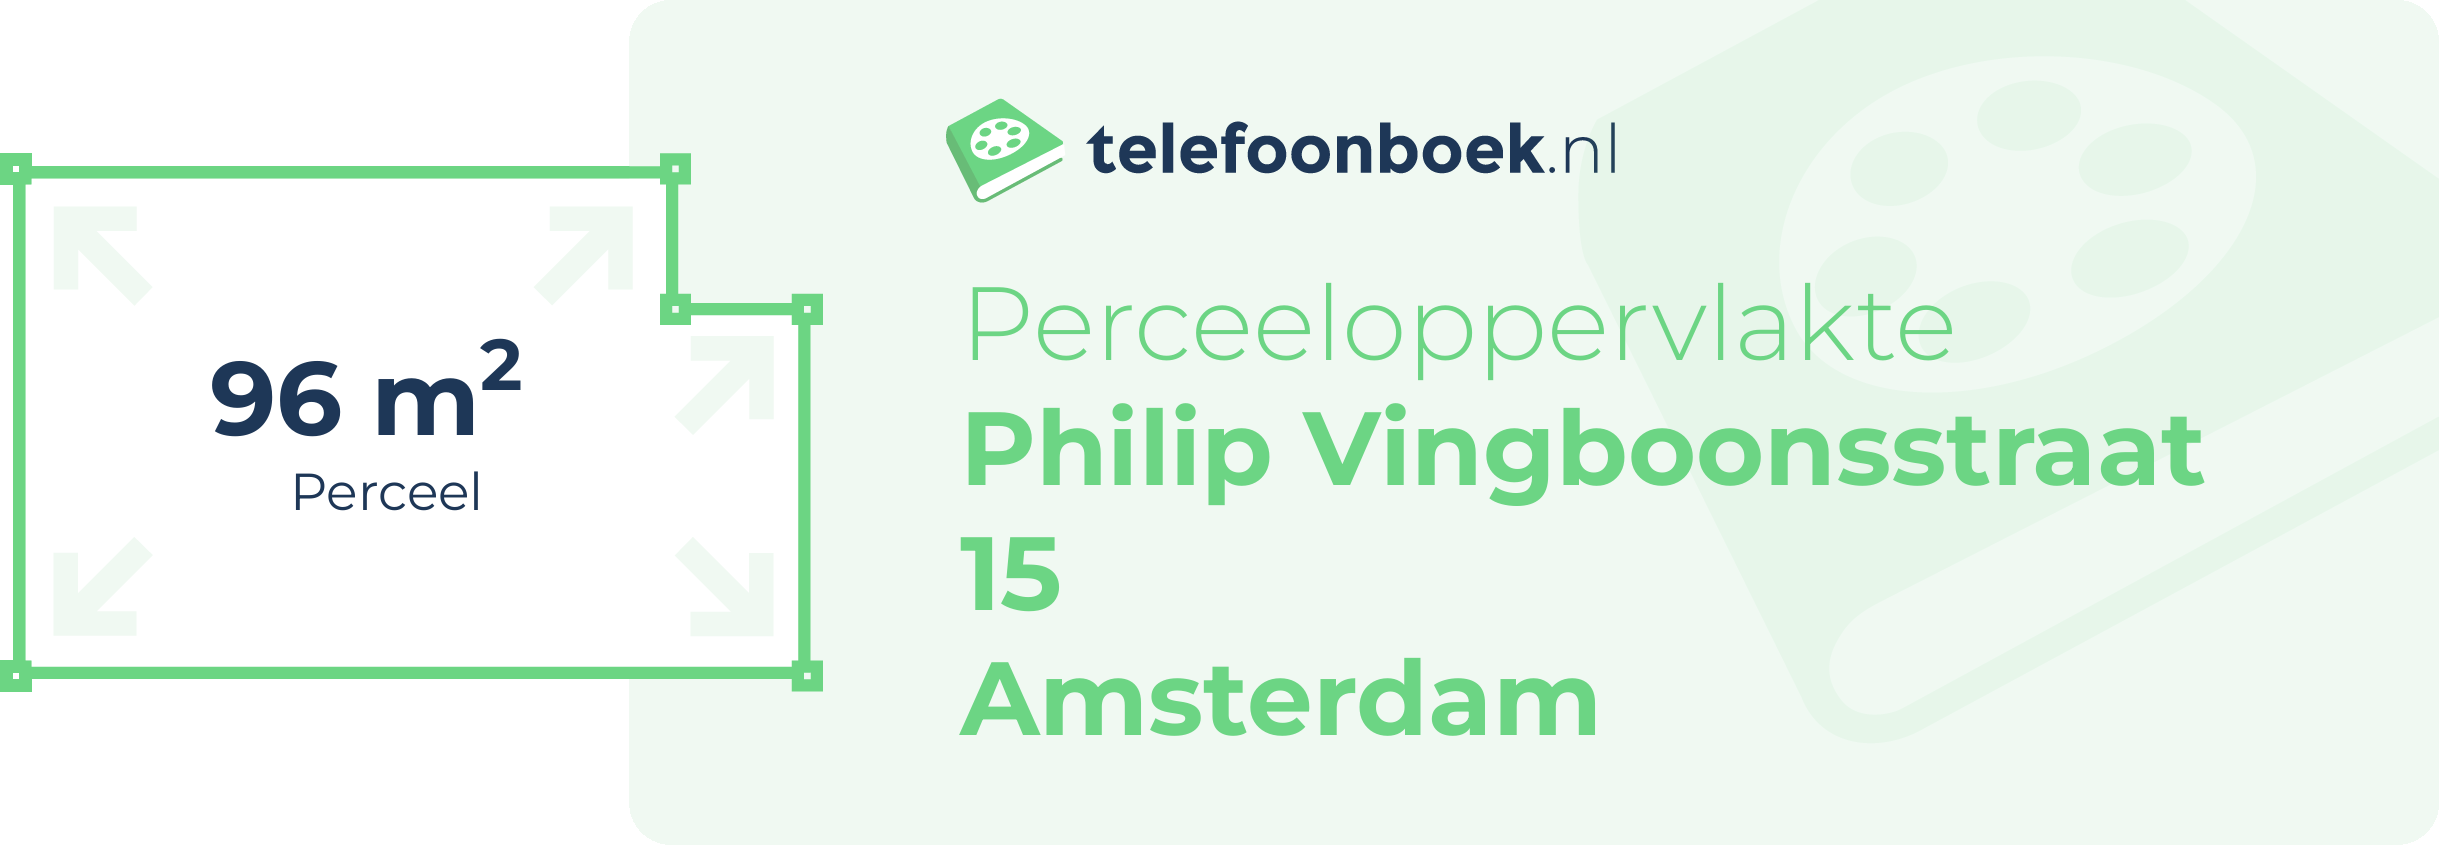 Perceeloppervlakte Philip Vingboonsstraat 15 Amsterdam